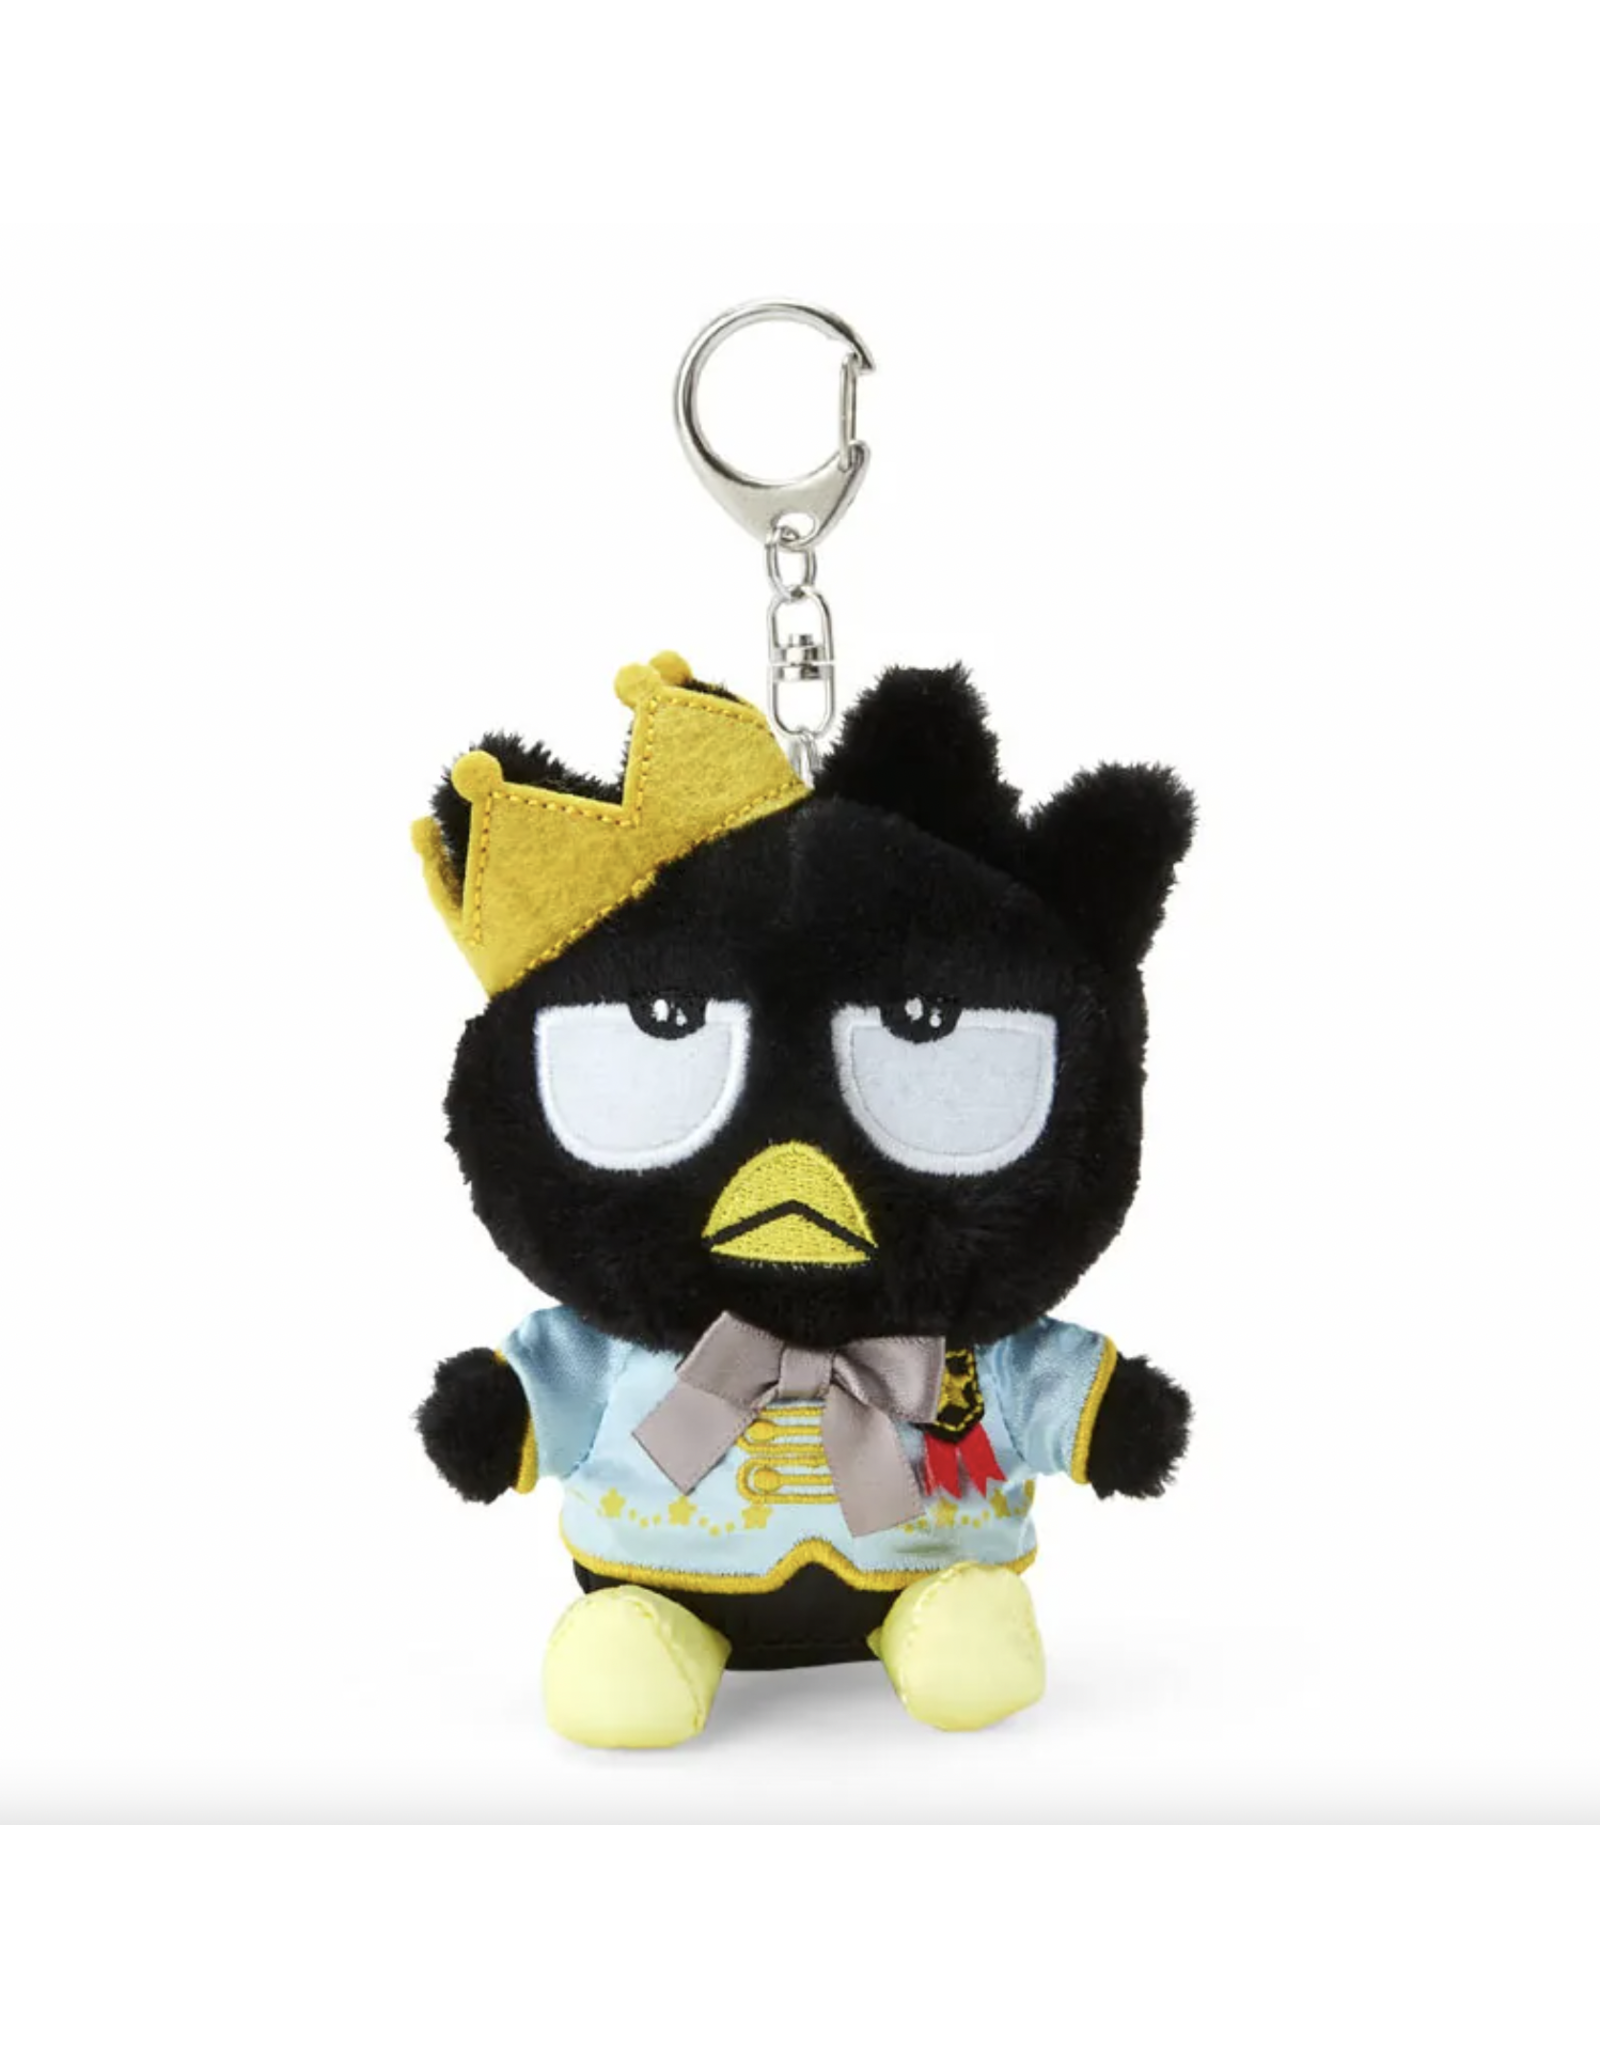 Sanrio Keychain Mascot: Bad Badtz-Maru